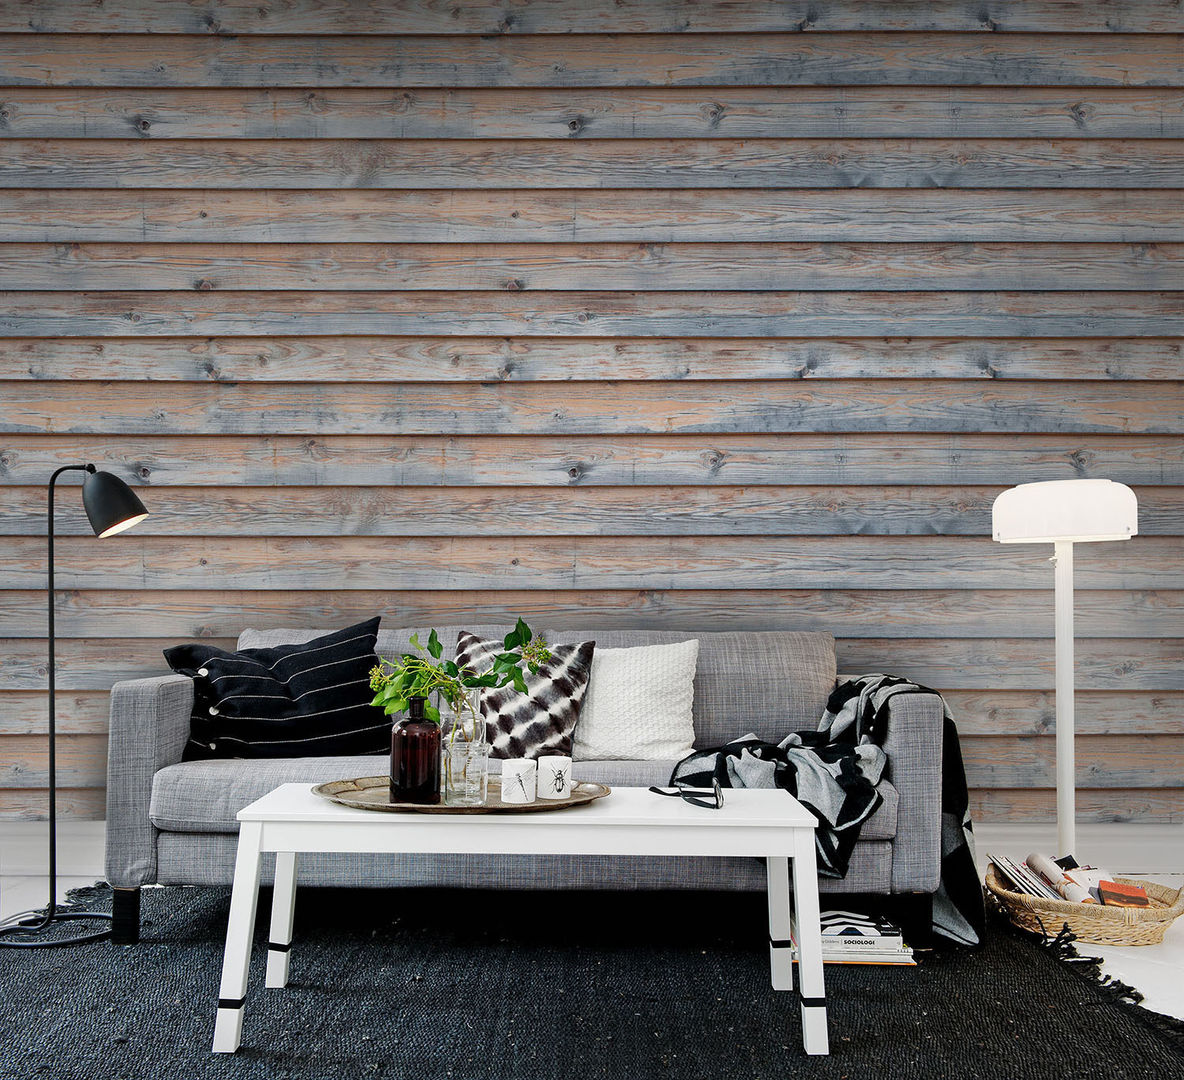 Planks Wallpaper by Mister smith interiors homify Paredes y suelos de estilo rústico Papeles pintados